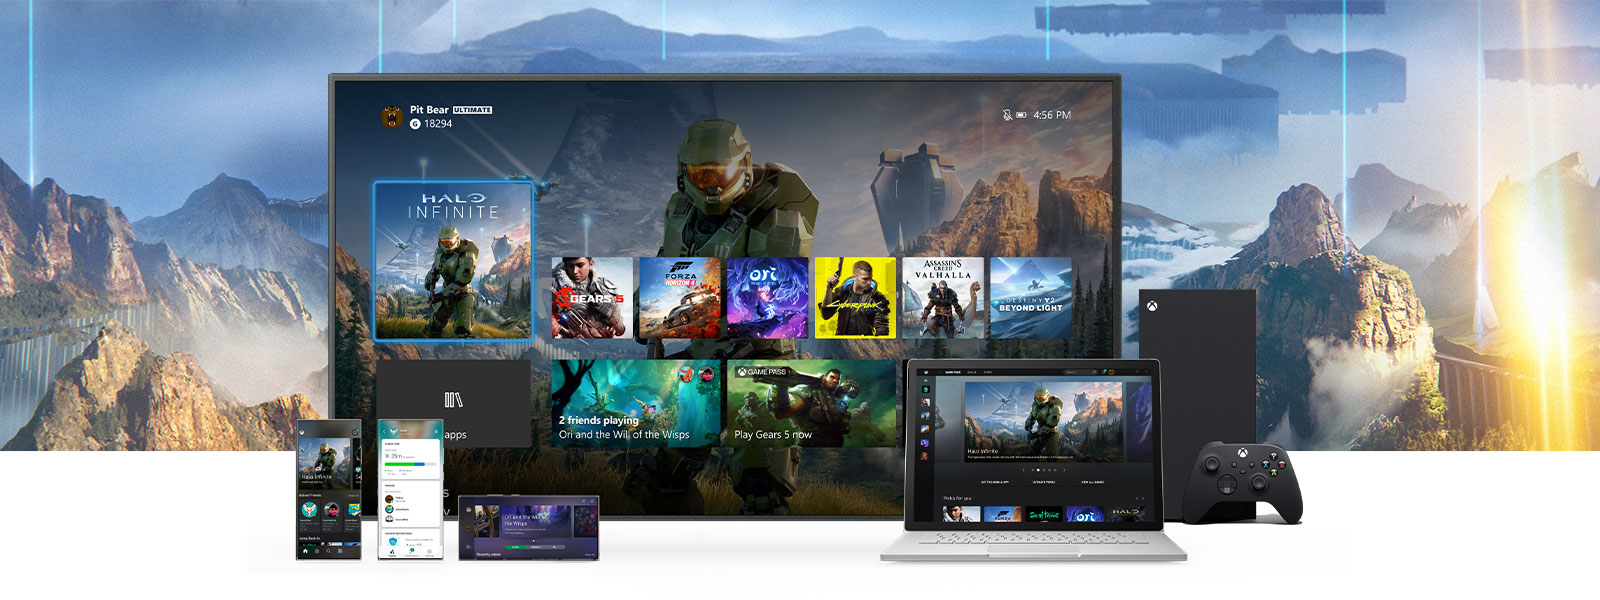 Das Xbox-Dashboard wird auf einem Fernsehgerät neben einer Xbox Series X präsentiert. Zusätzliche Geräte wie ein PC und mobile Geräte befinden sich vor dem Fernsehgerät.